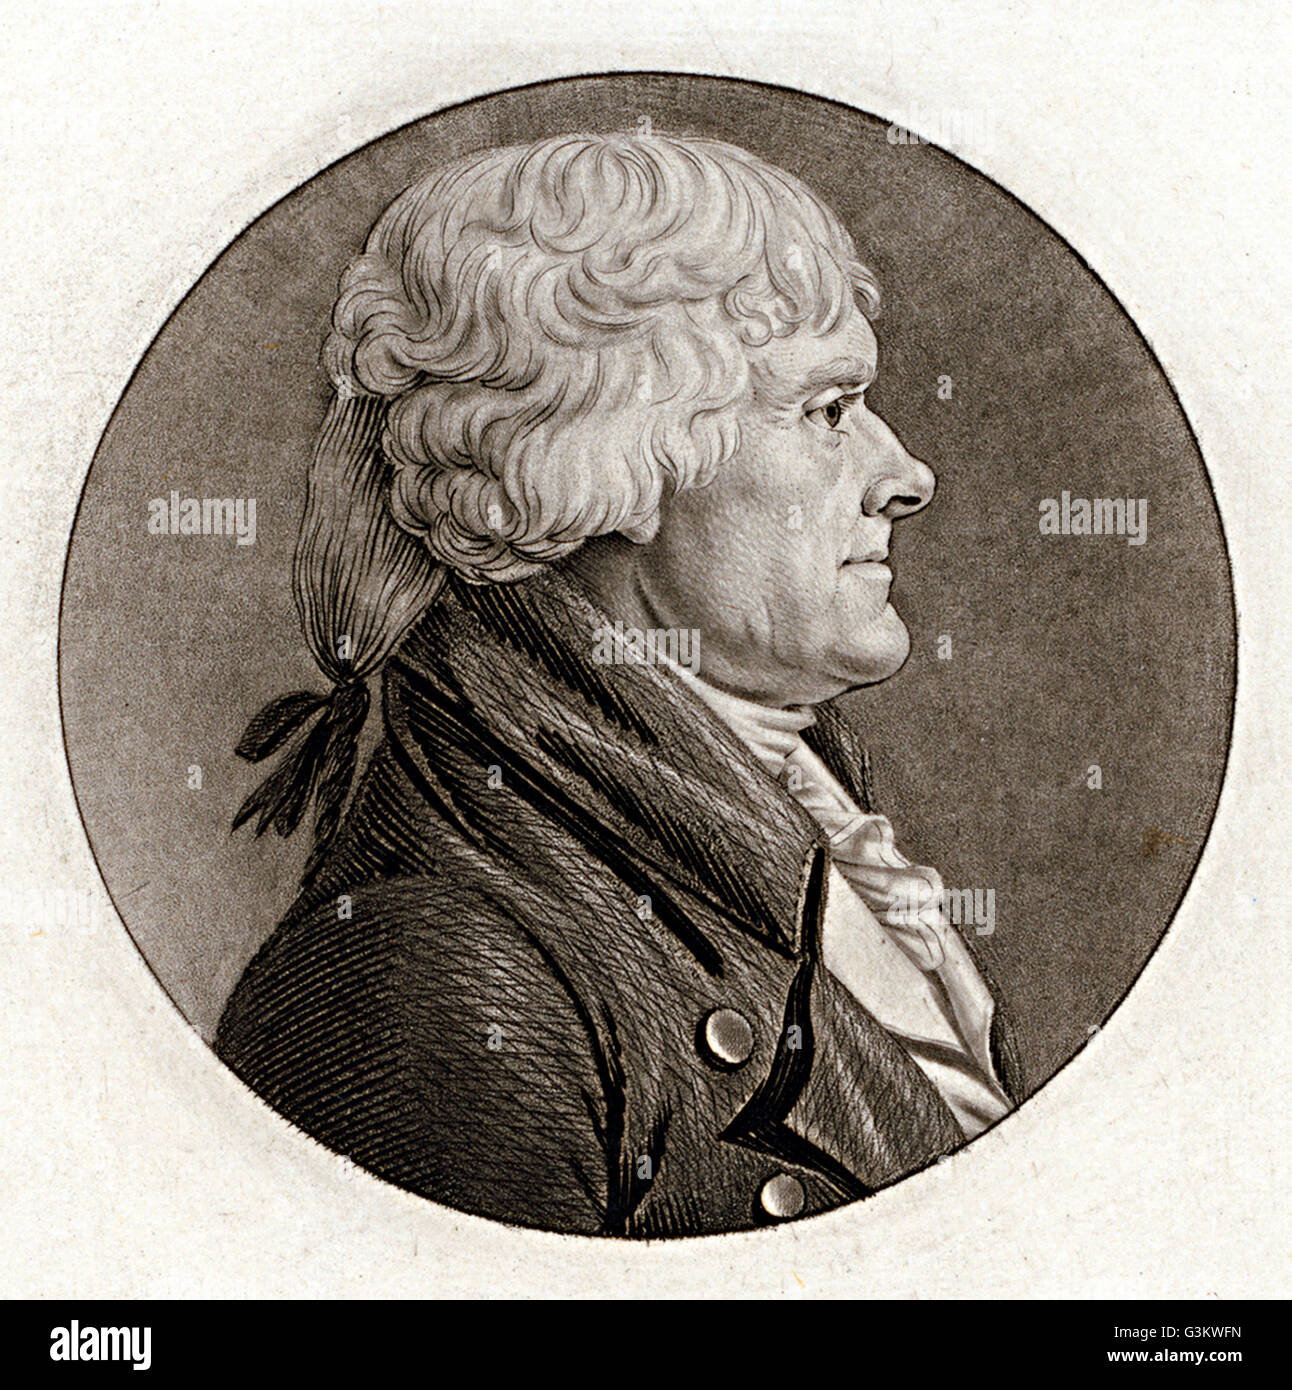 Thomas Jefferson, 1743 - 1826 Stock Photo